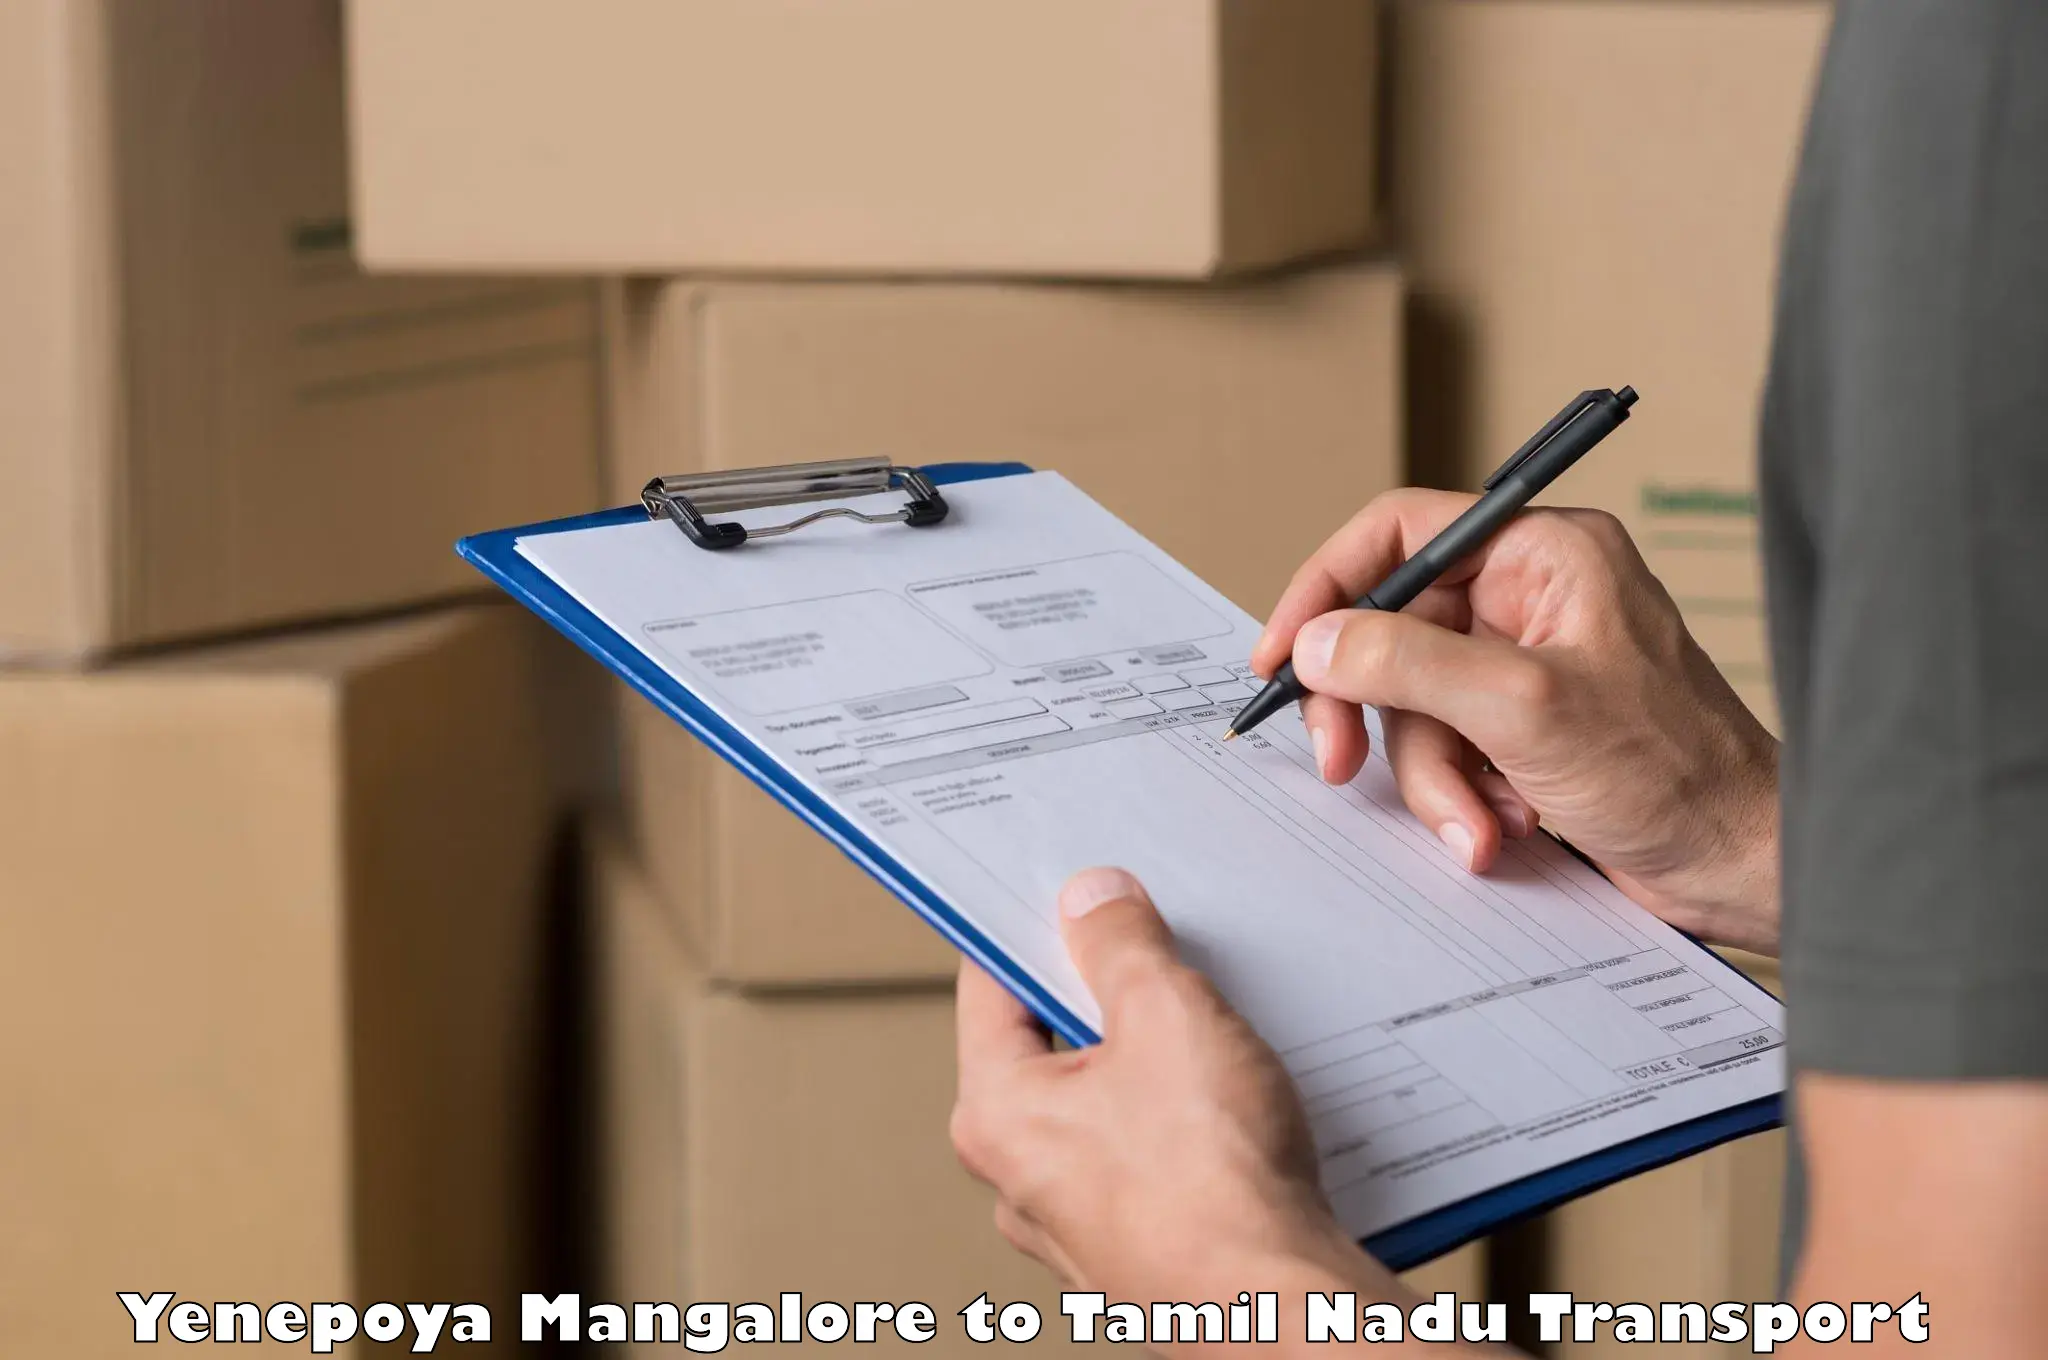 Shipping partner Yenepoya Mangalore to Tamil Nadu